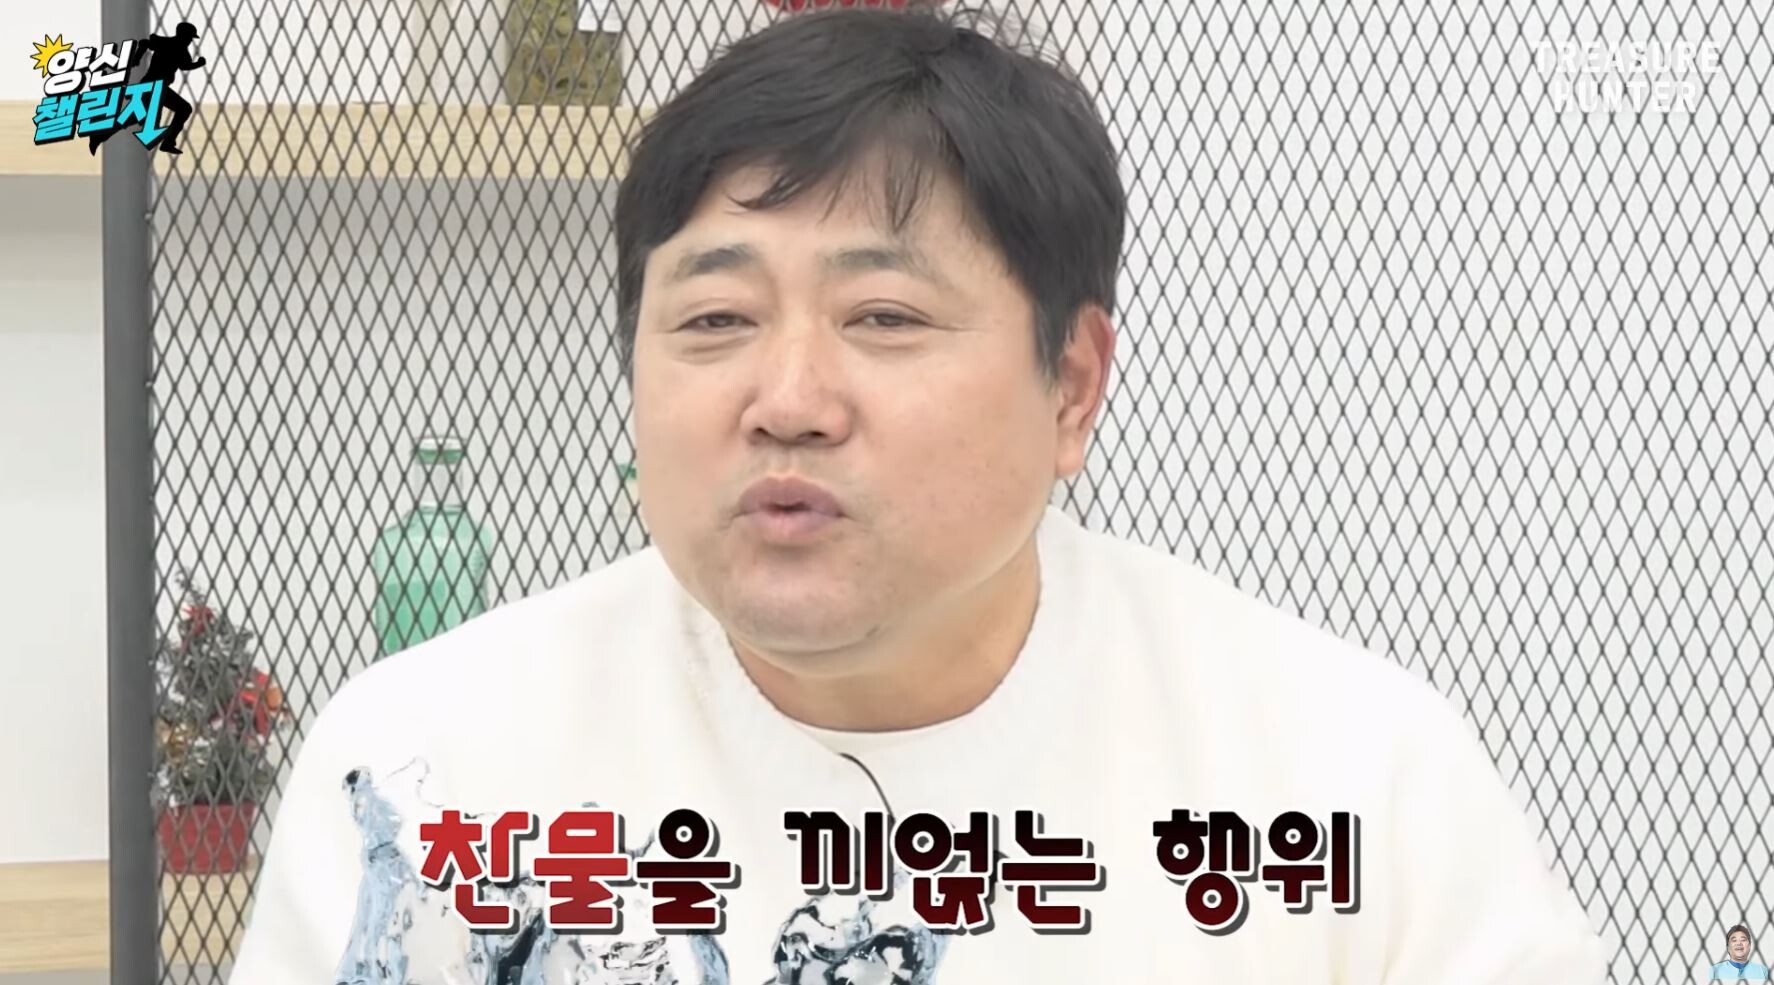 양준혁 해설위원이 강정호 복귀와 관련해 반대의 목소리를 냈다. 사진=유튜브 화면 캡처